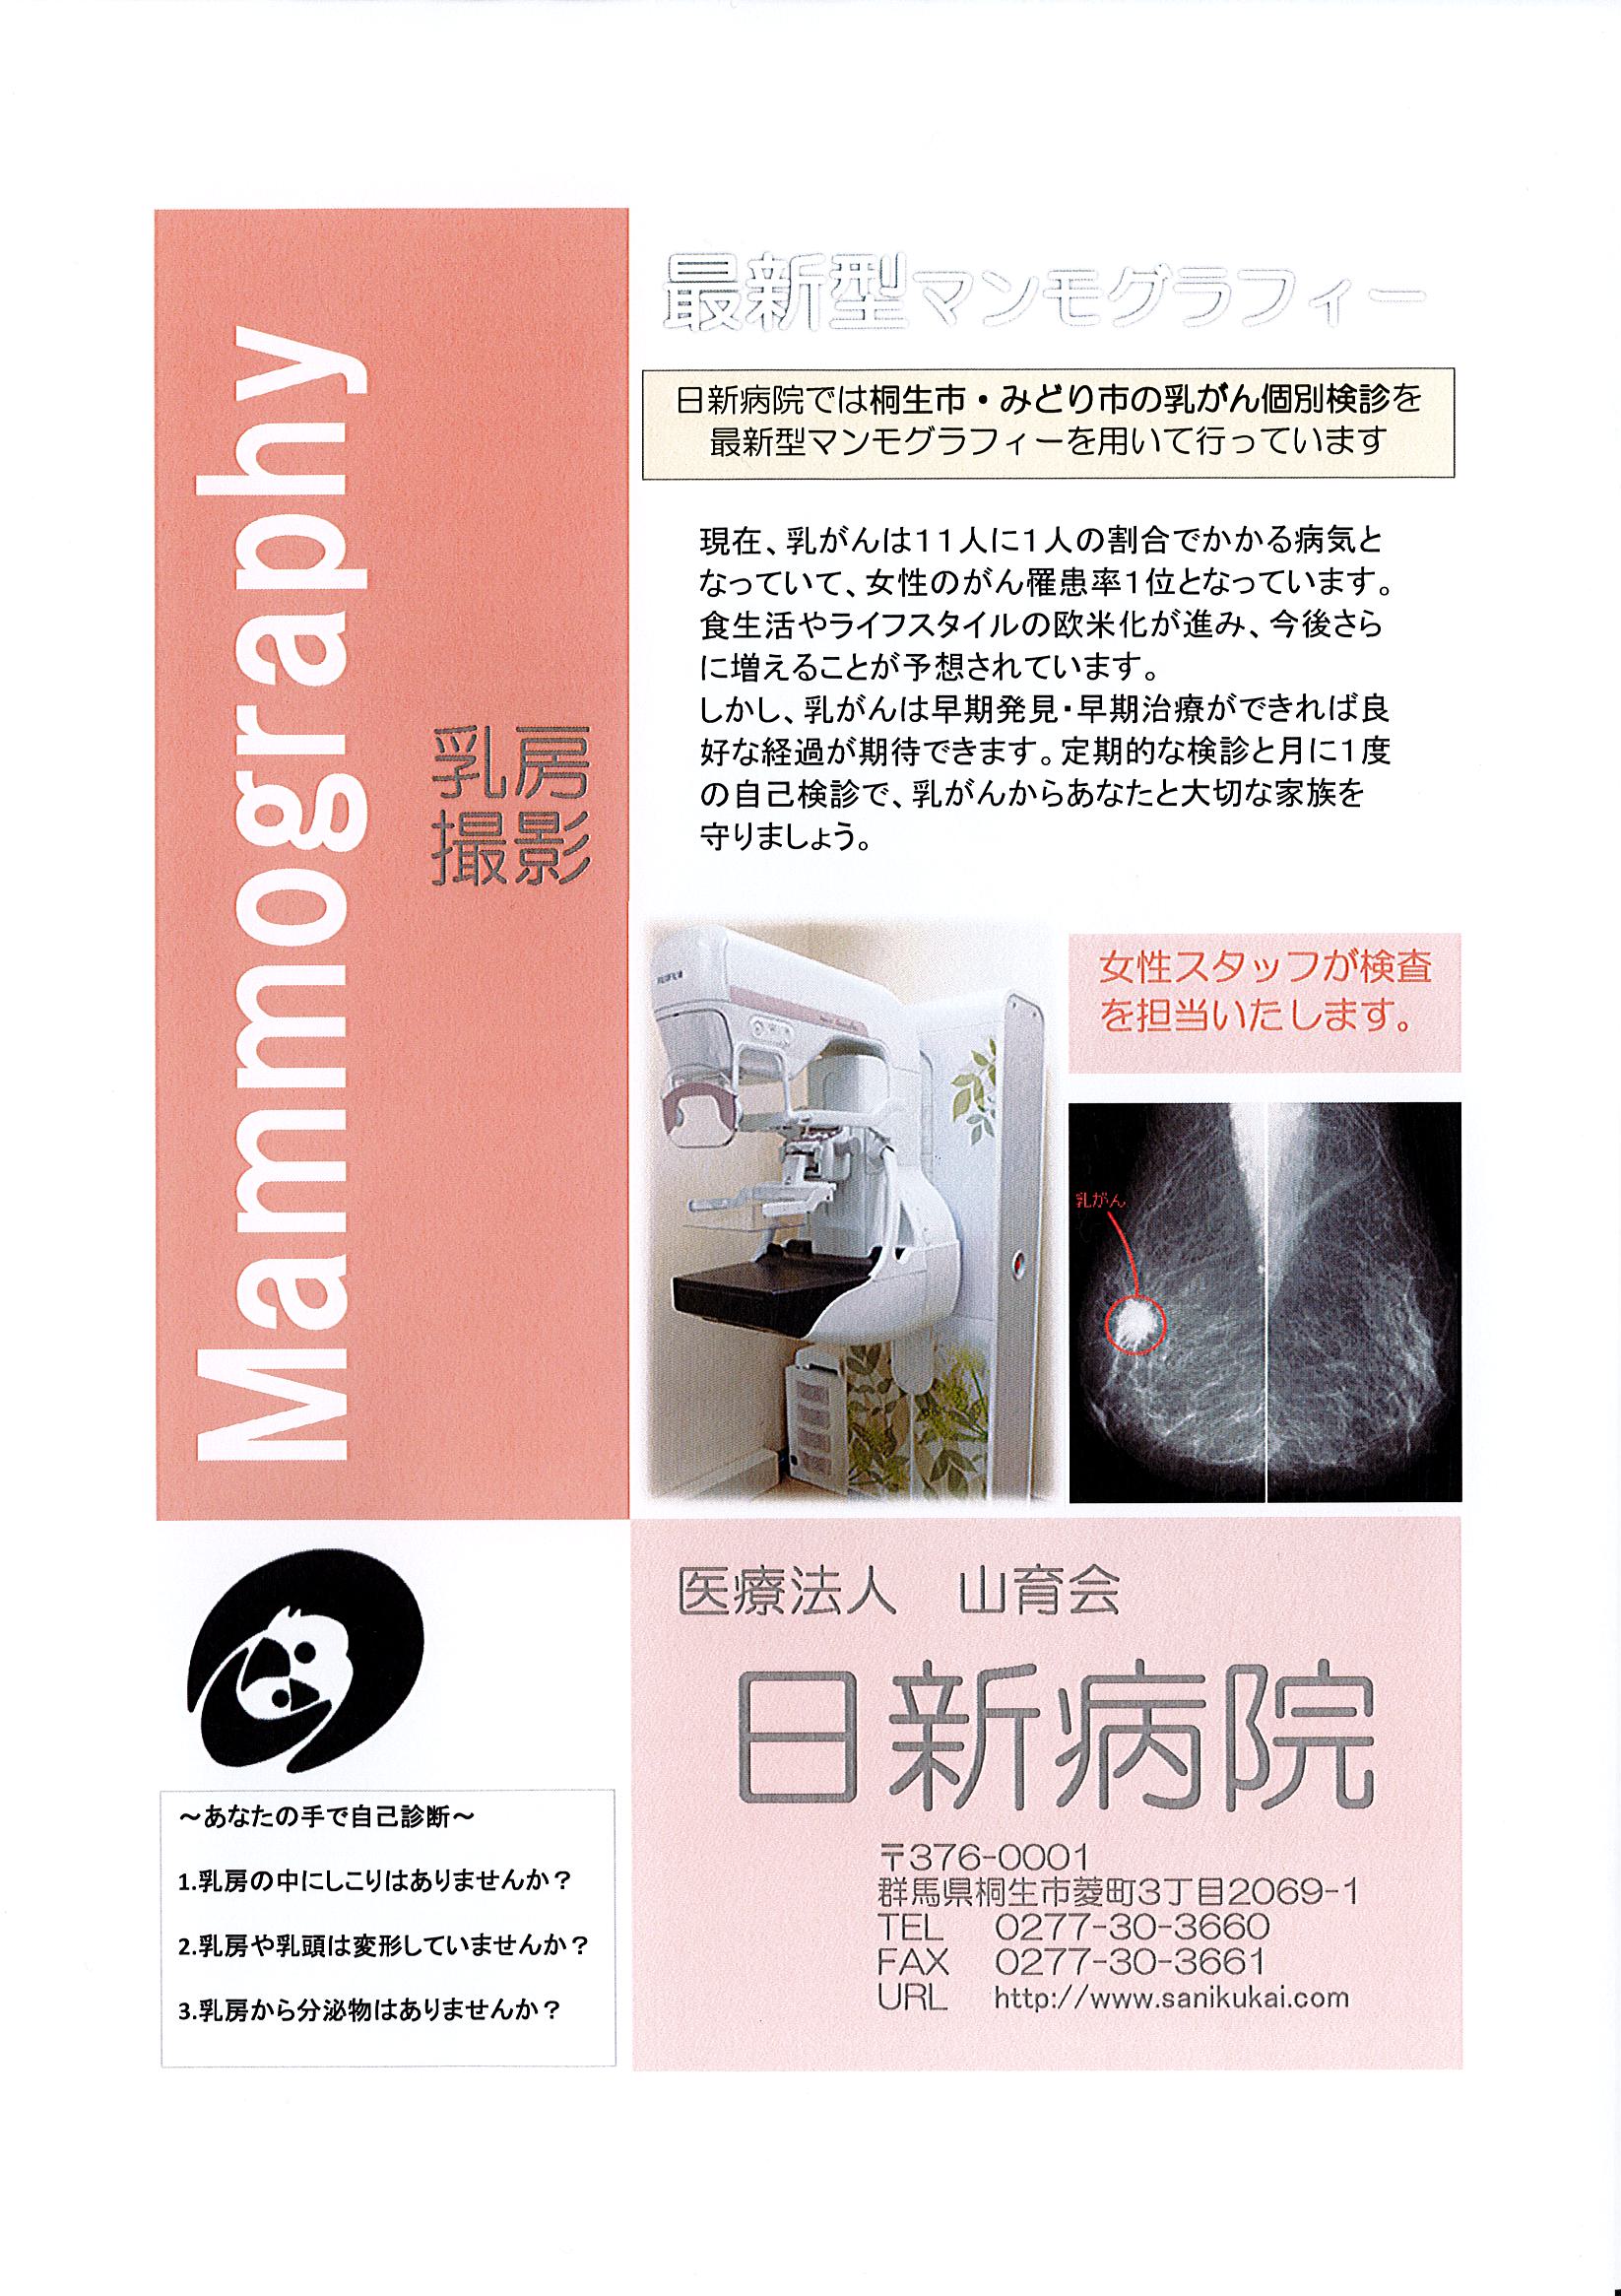 桐生市・みどり市の乳がん検診を実施しています